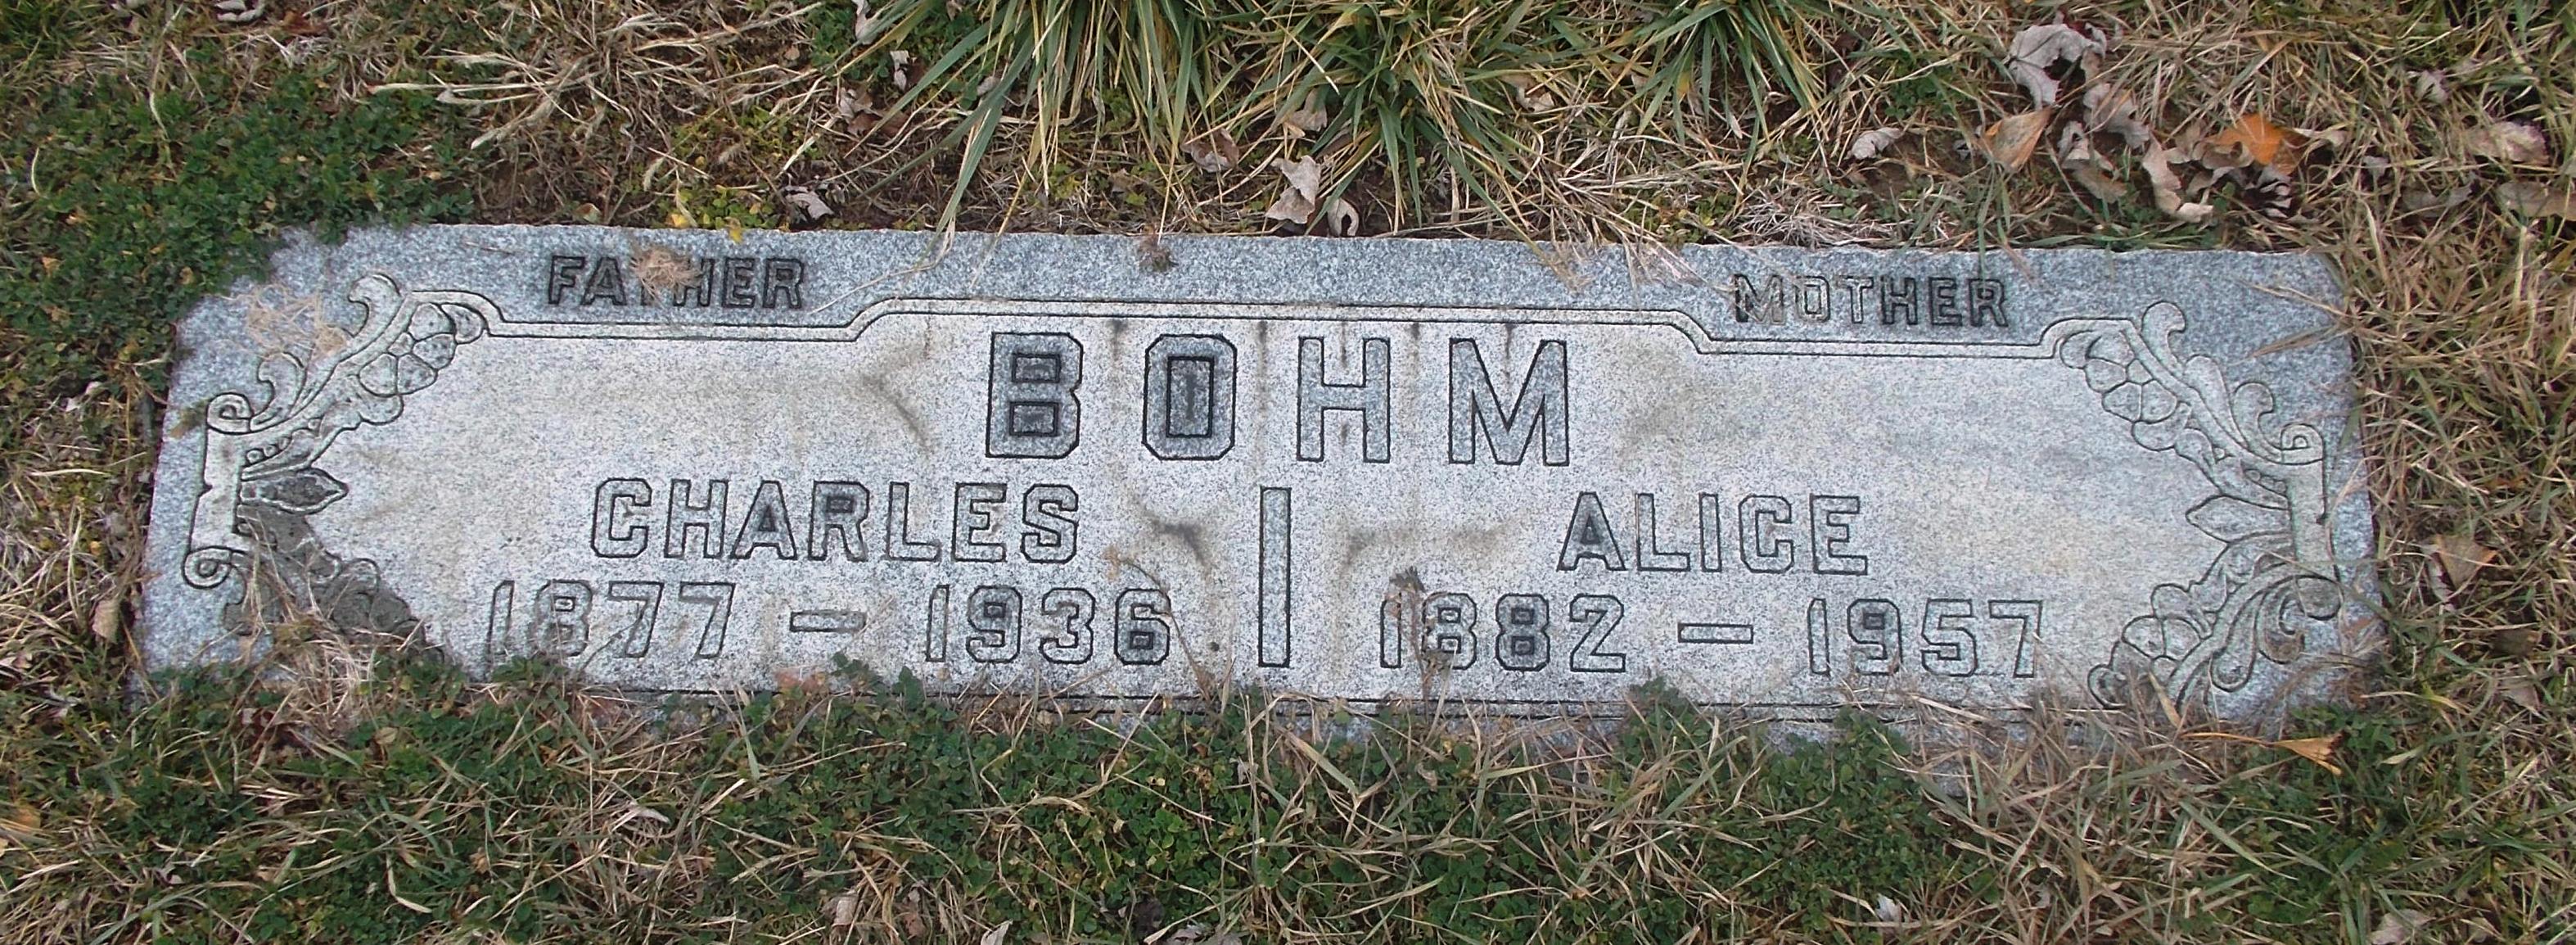 Charles Bohm